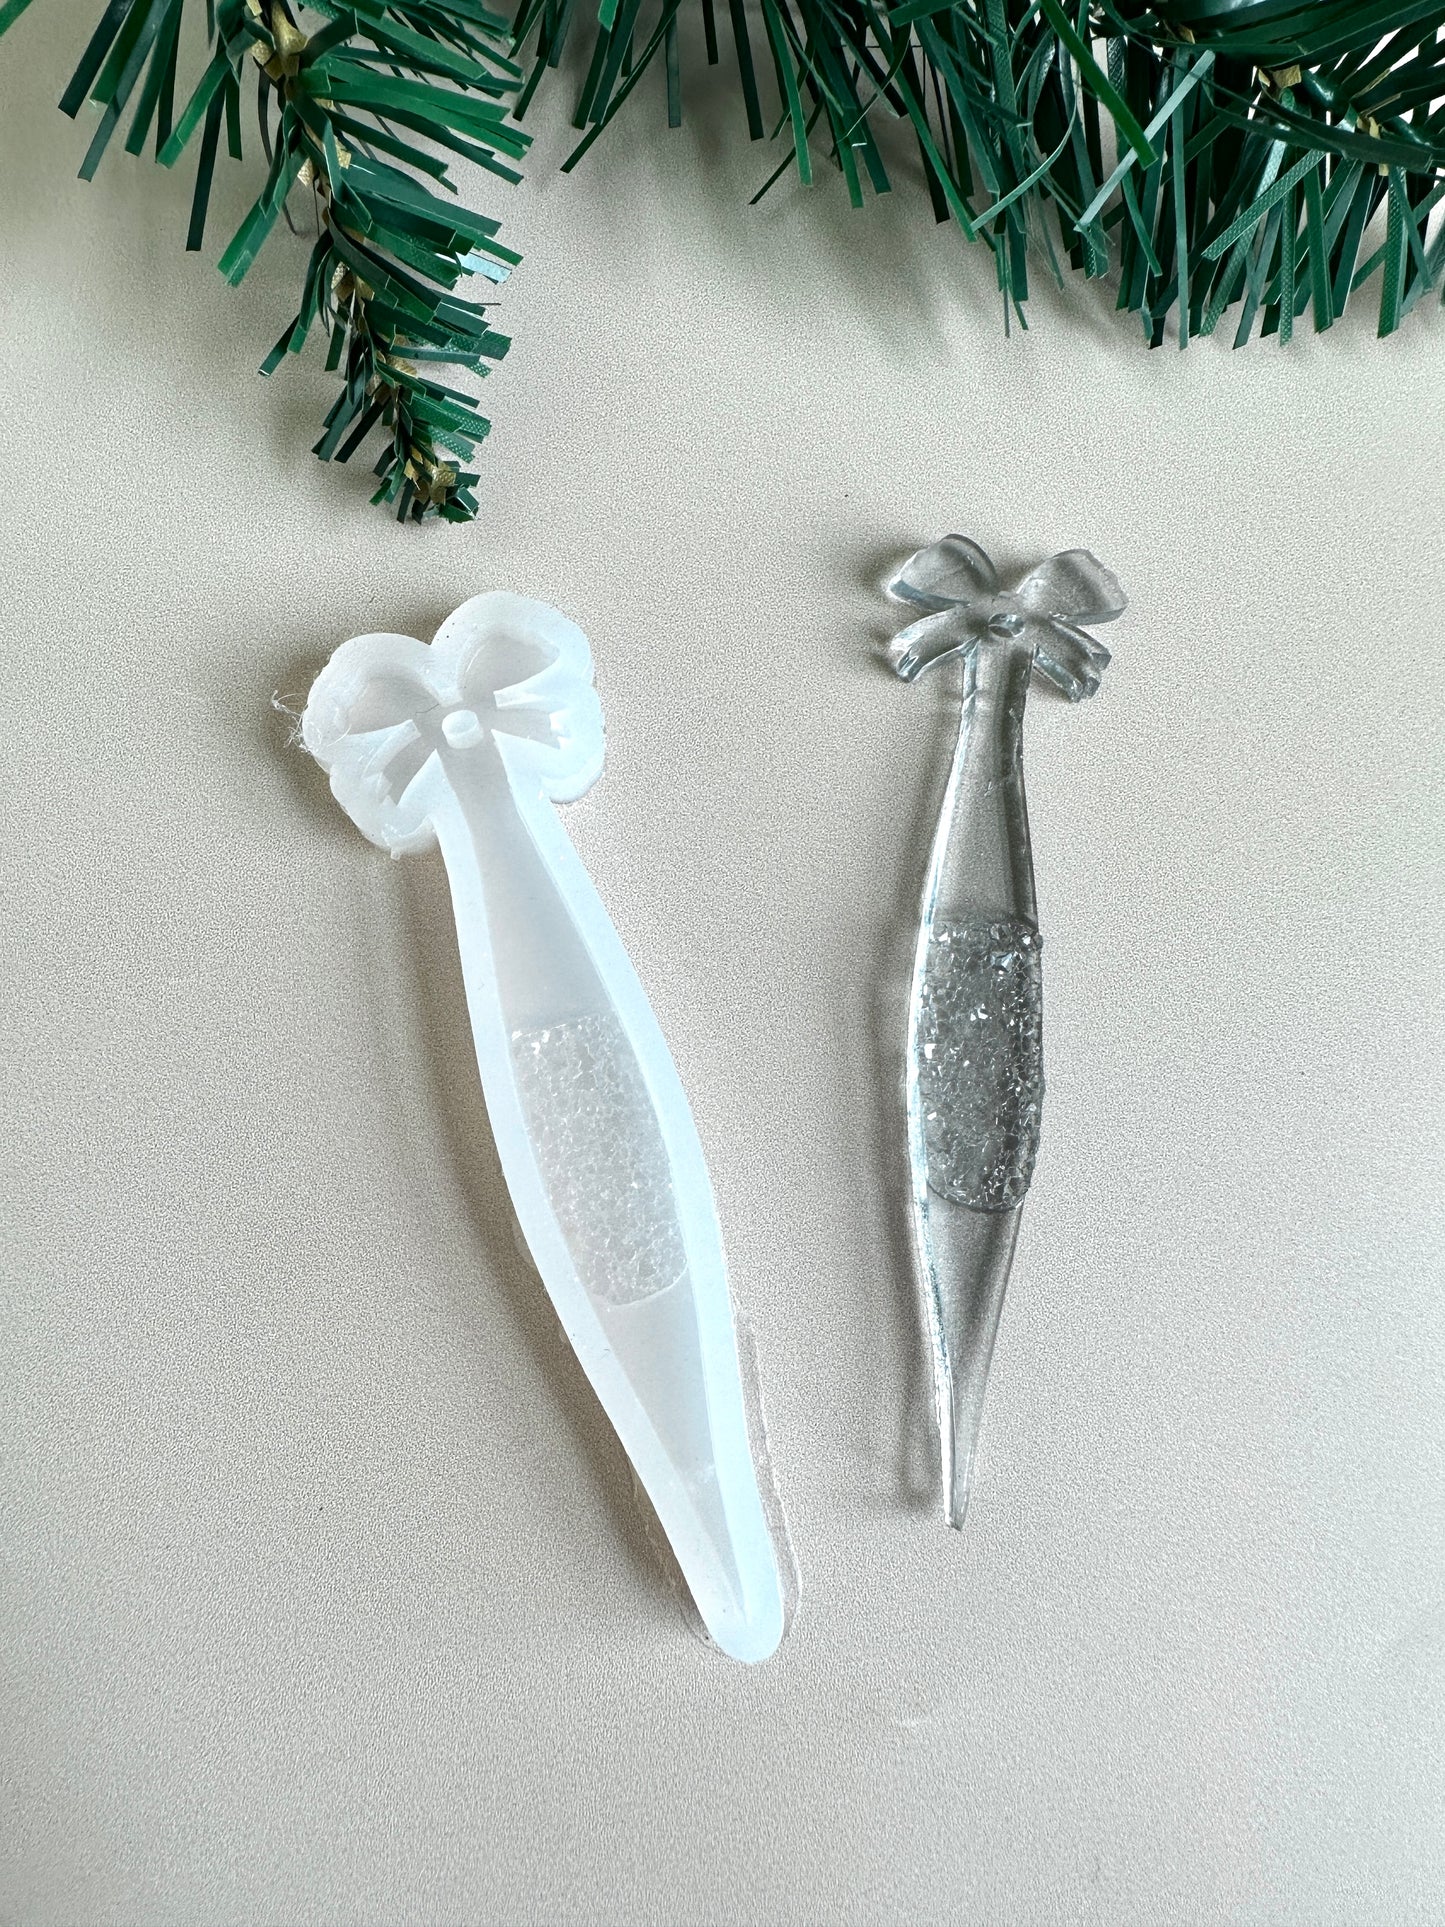 Weihnachts-Kristall-Eiszapfen-Silikonform – Herstellung von Weihnachtsbaumschmuck, ideal für festliche Dekoration, perfektes Weihnachtsgeschenk für Bastler